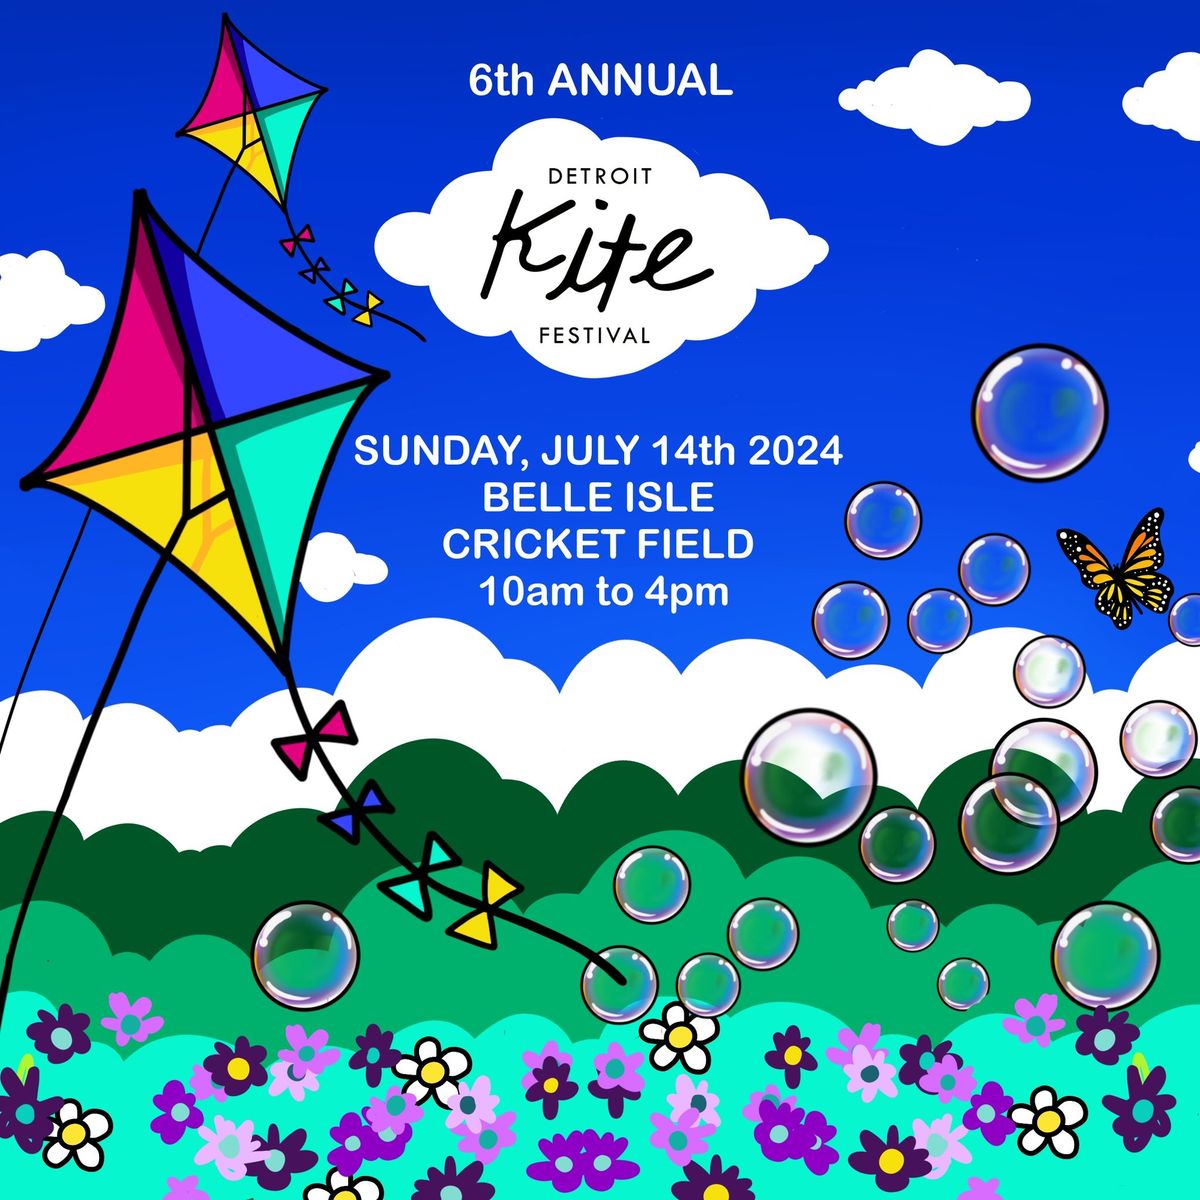 6th Annual Detroit Kite Festival 2024